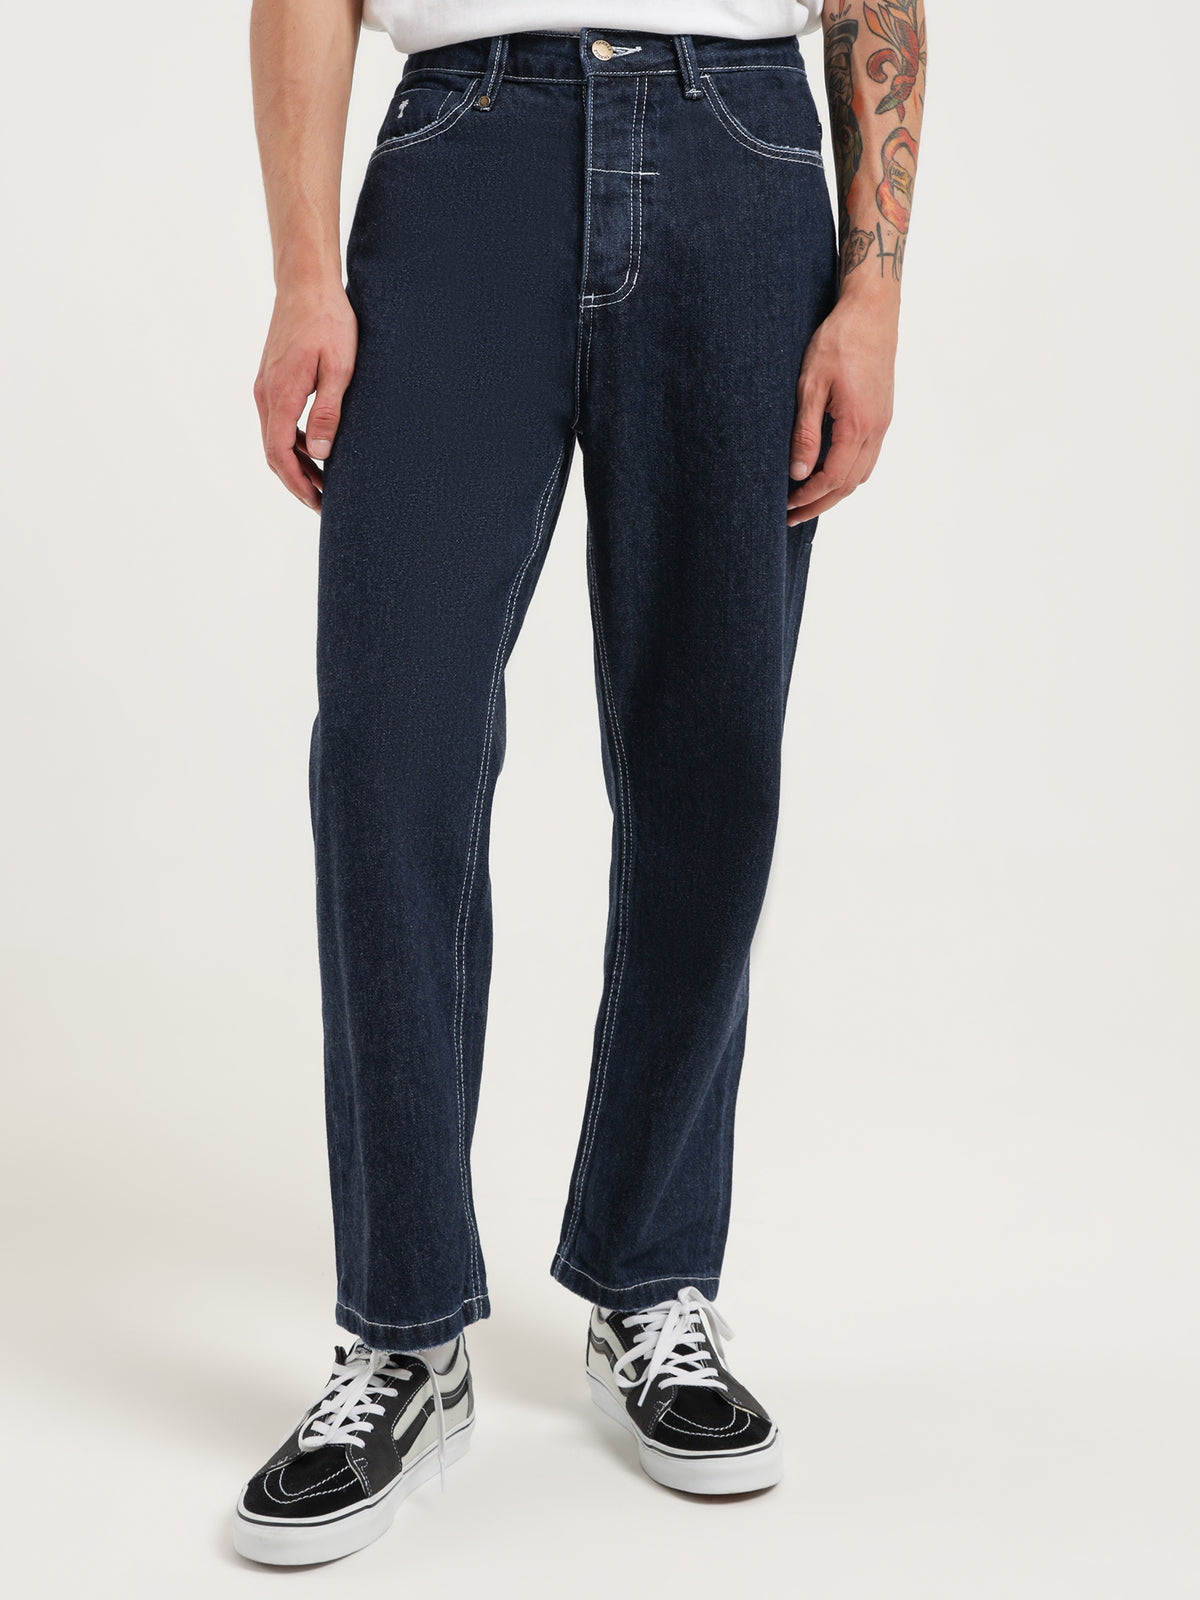 Slacker Jeans in Indigo